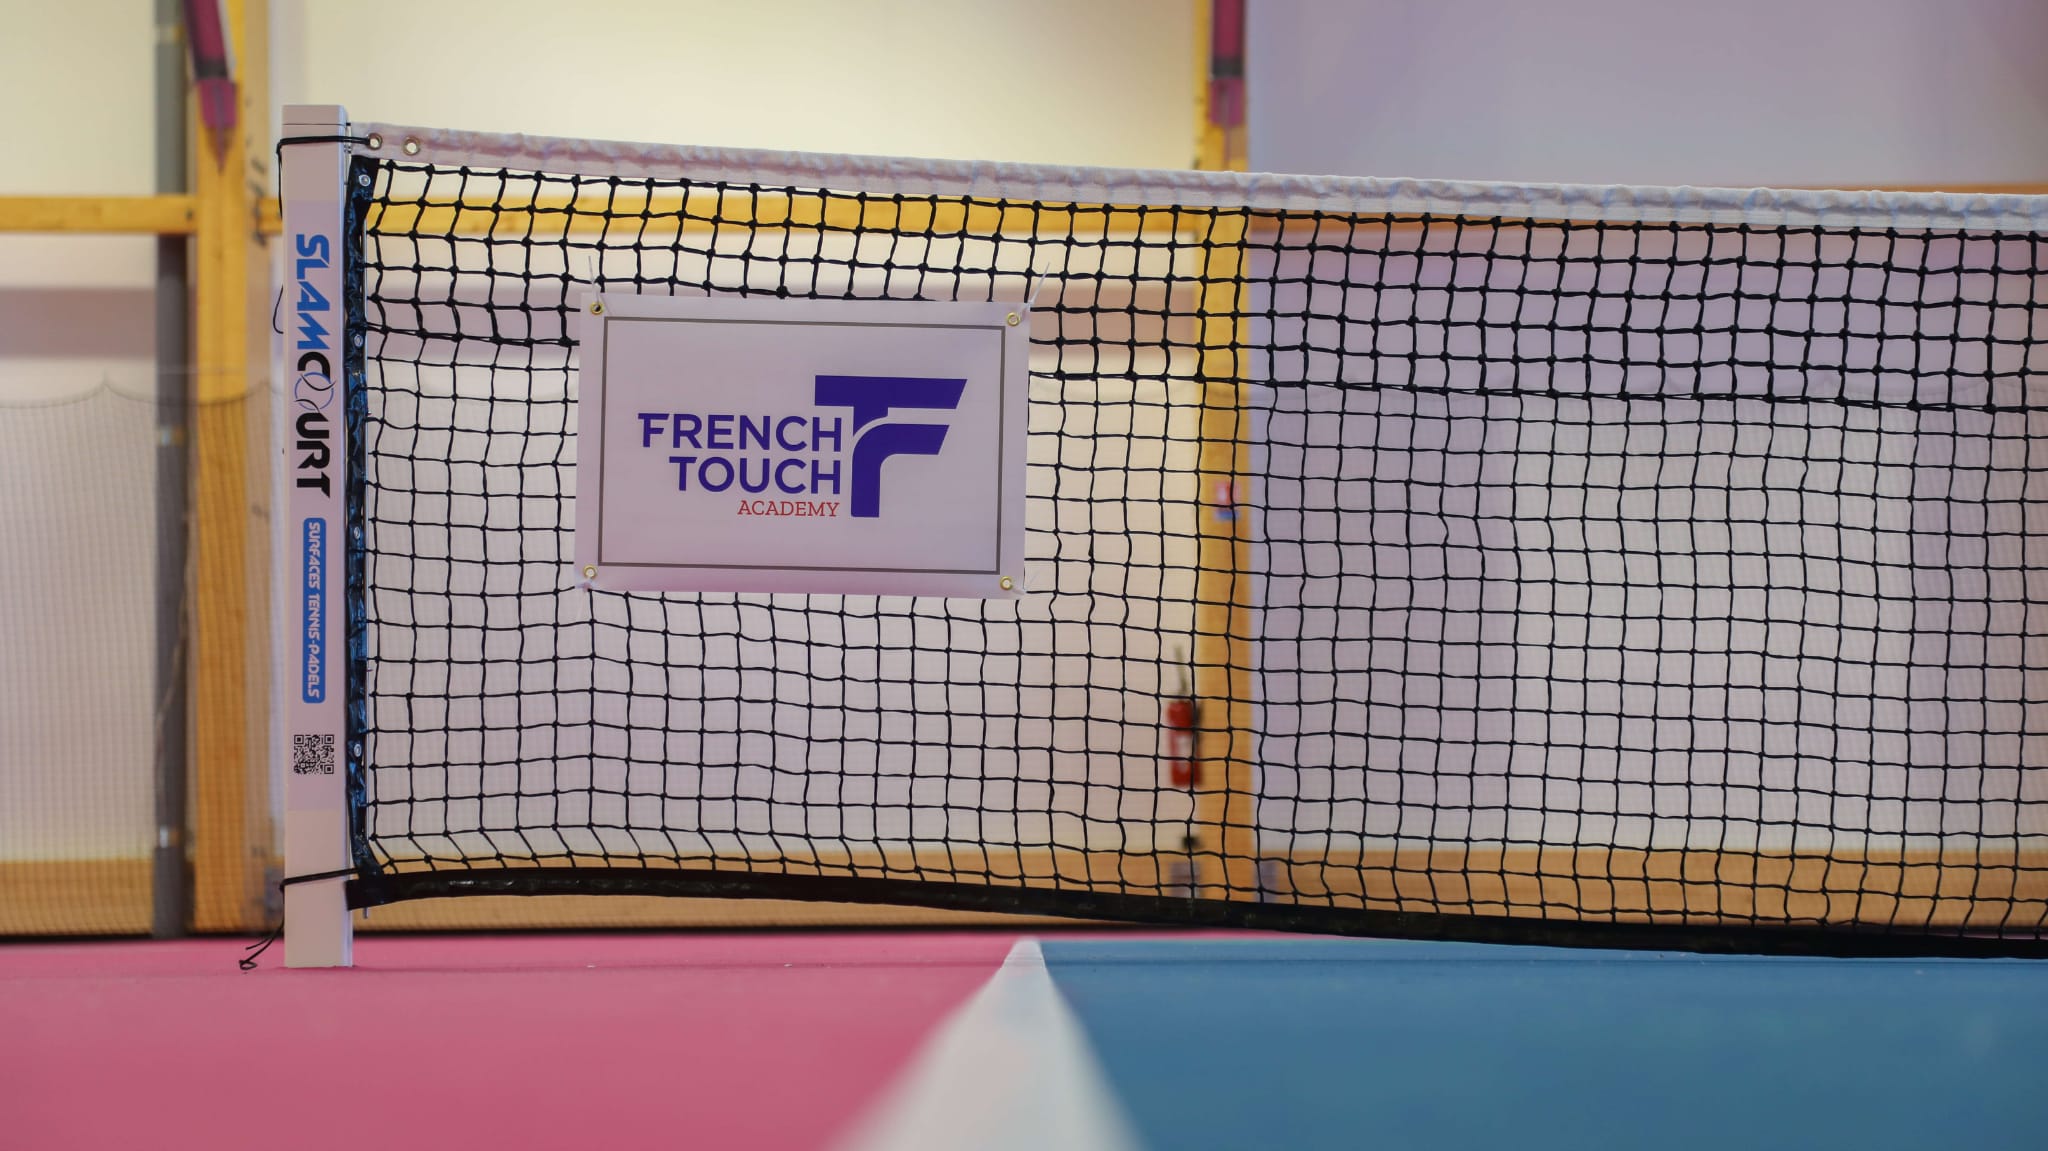 Tennisnetz mit French Touch Academy Logo